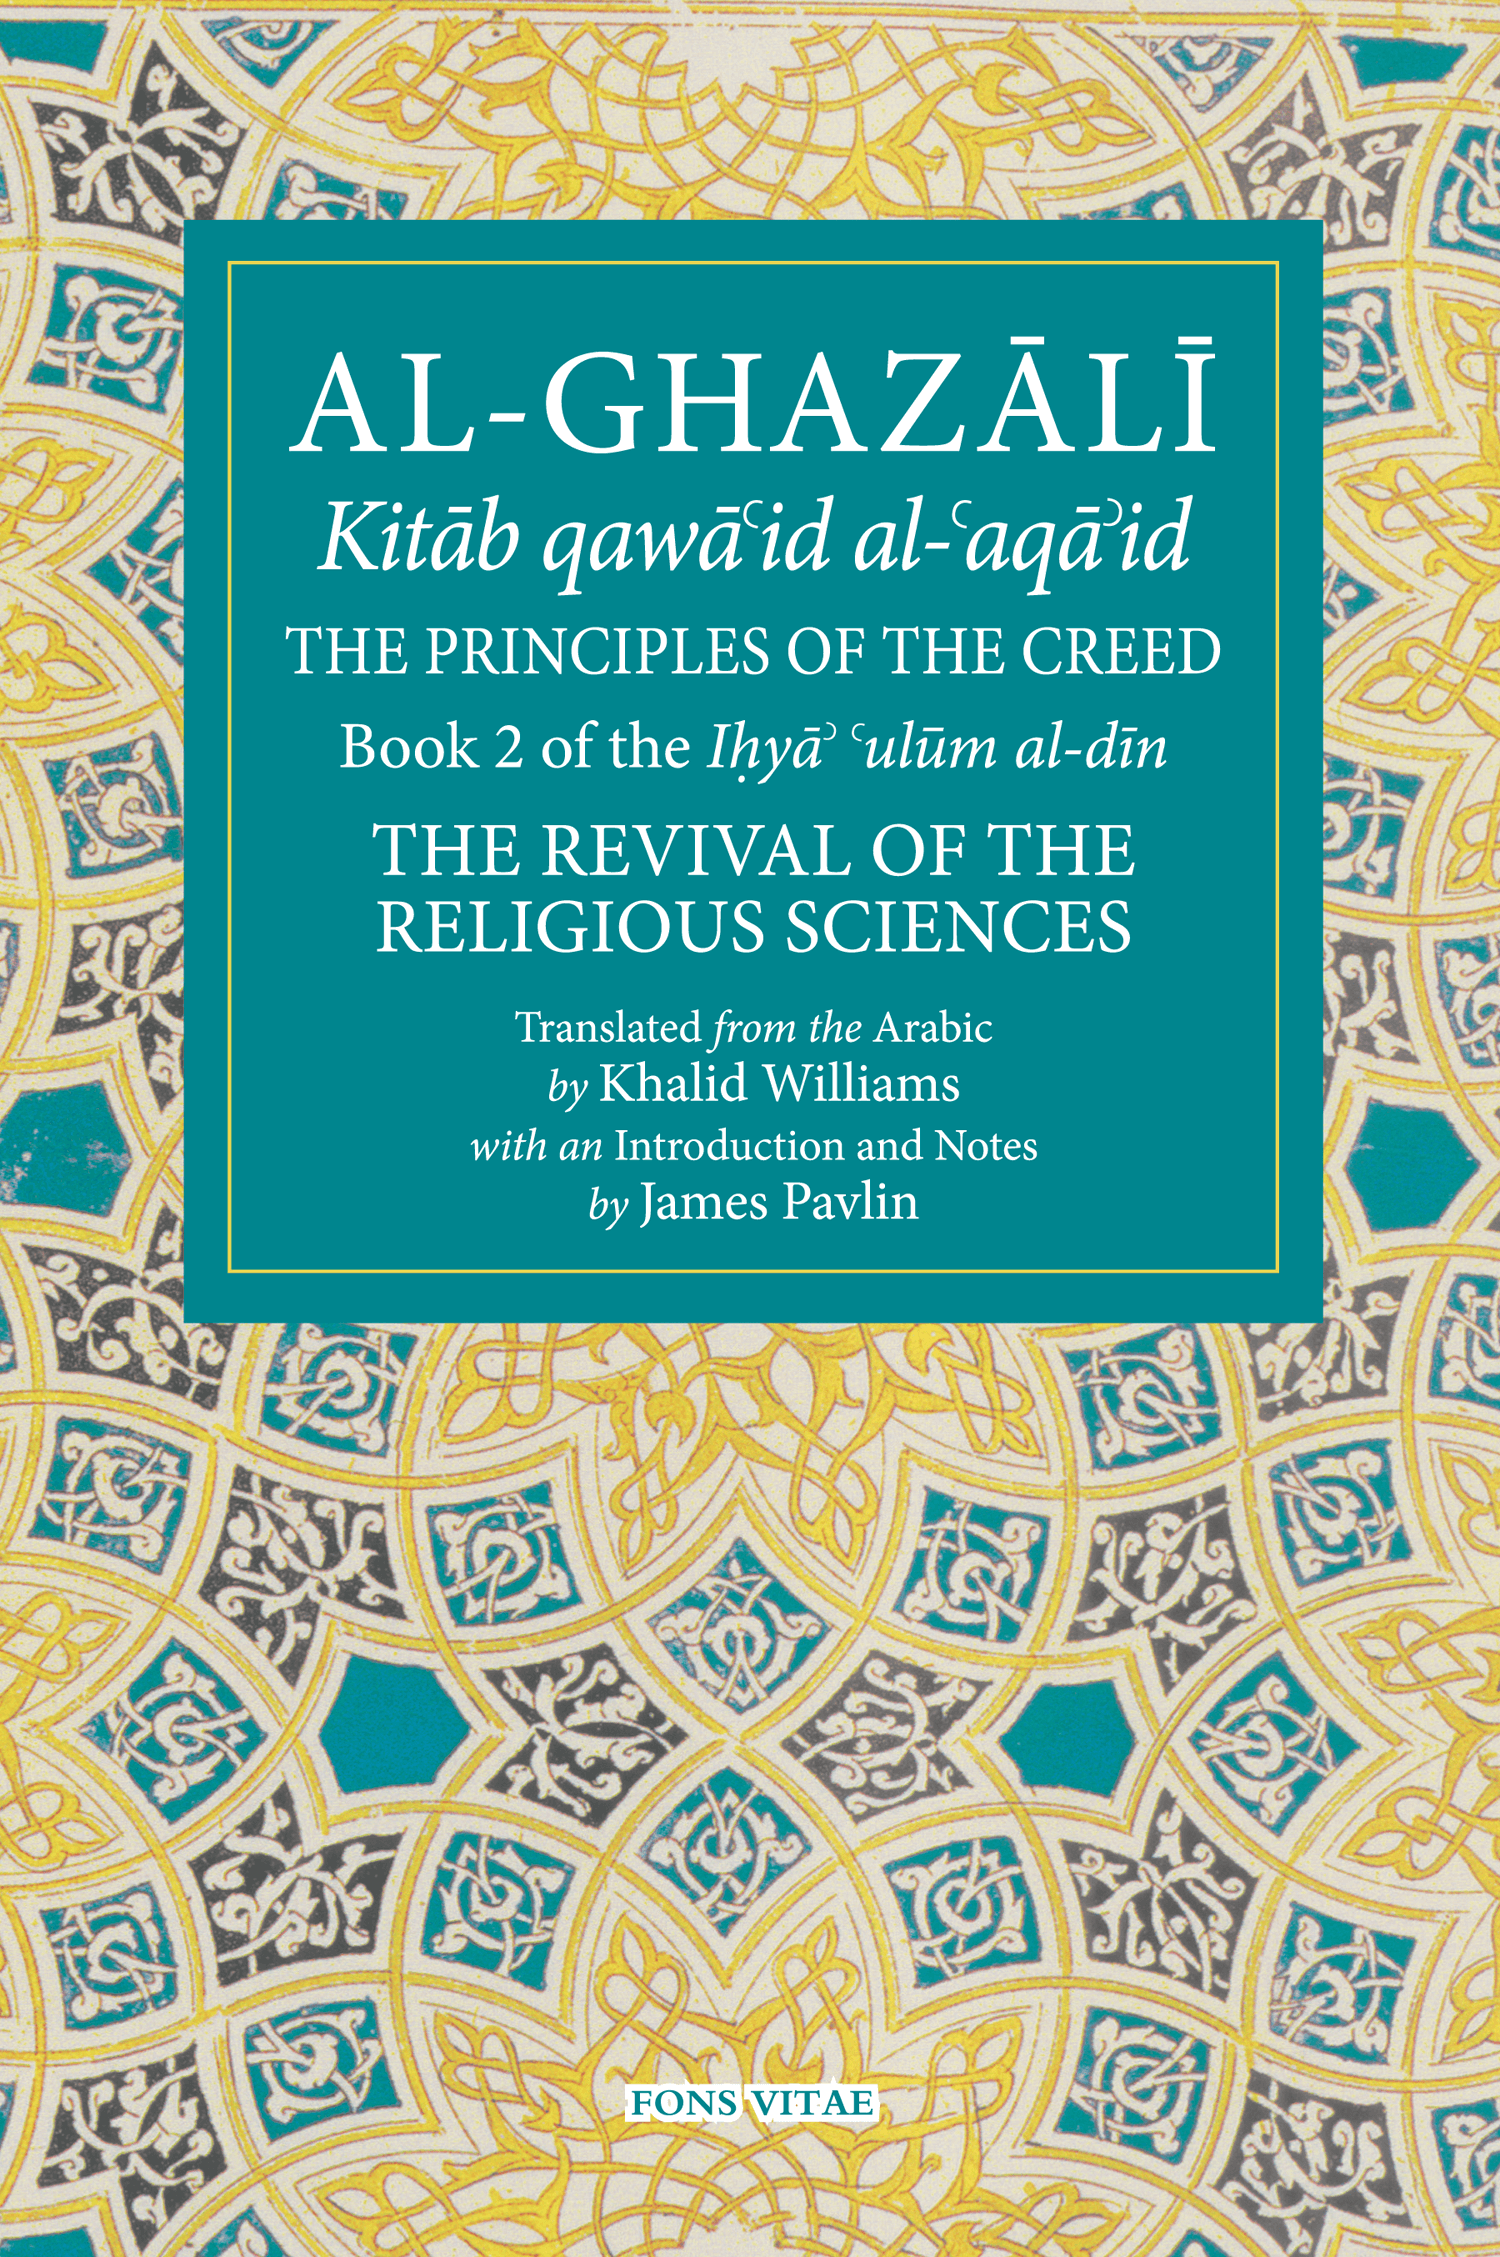 Al-Ghazali The Principles of the Creed (Kitab qawa'id al-aqa'id)